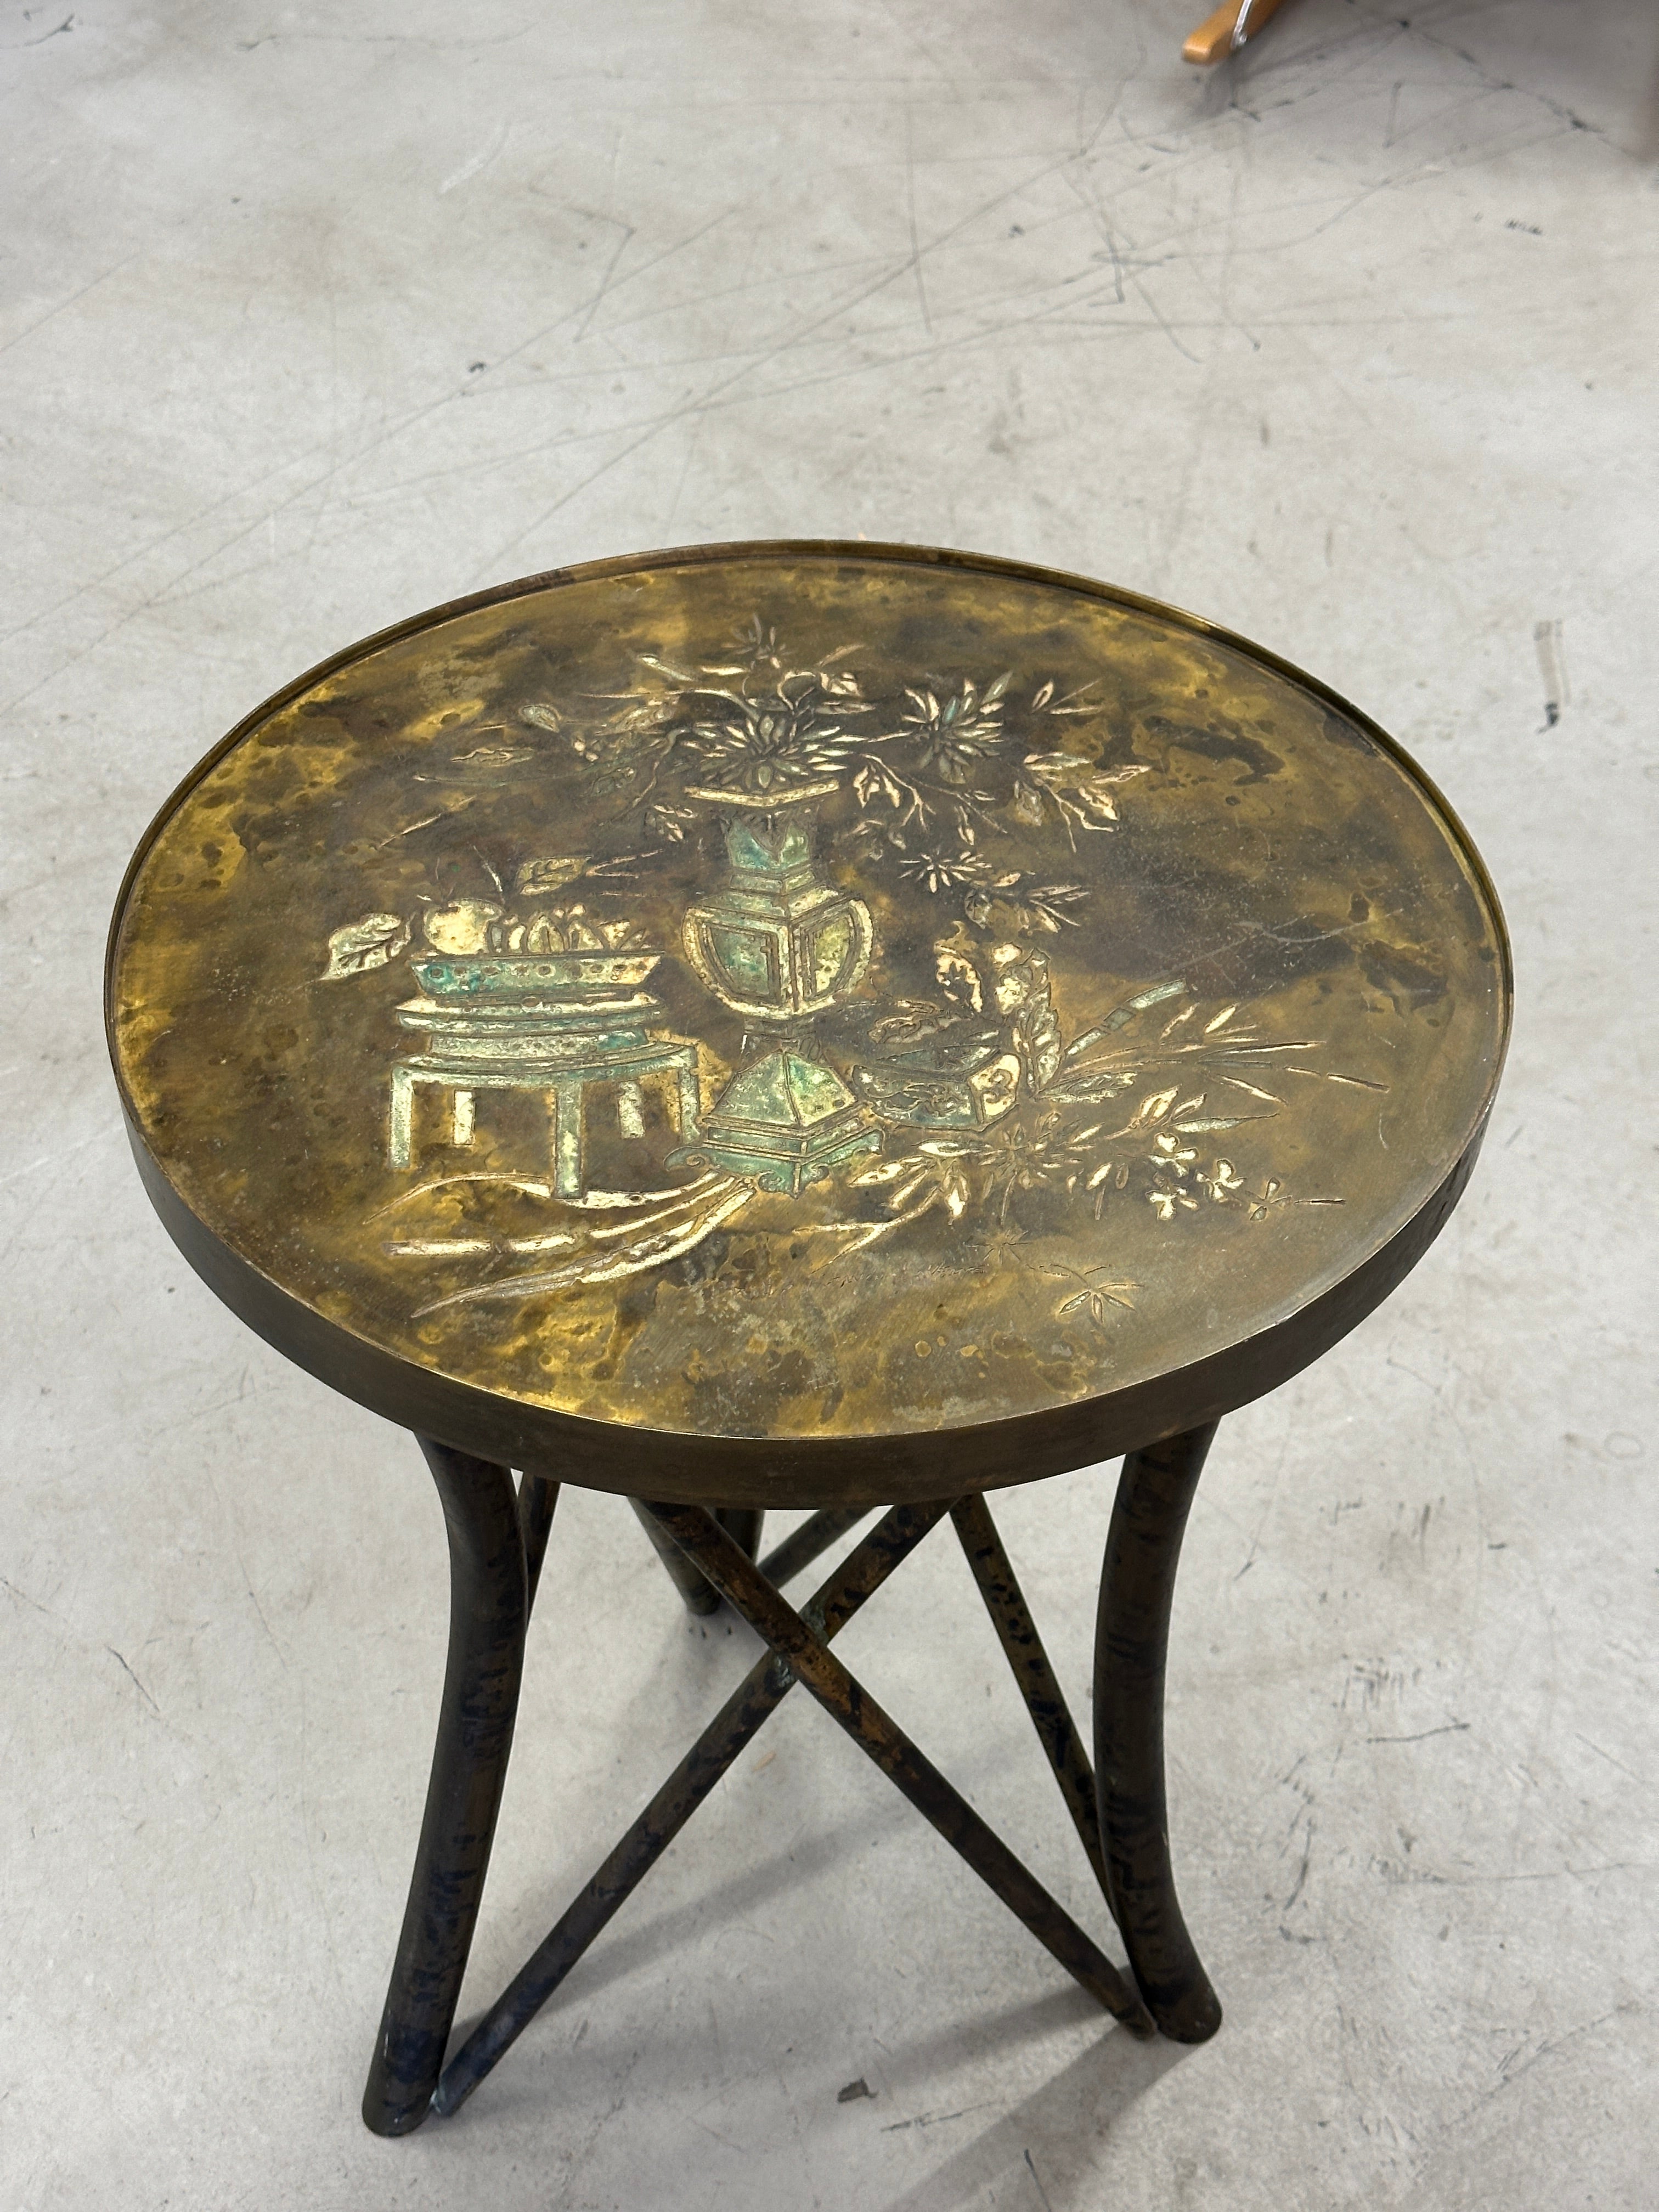 Ein schönes und ungewöhnliches Beispiel für einen mit Säure geätzten Tisch von Philip und Kelvin LaVerne. Diese kleine Schönheit hat ein florales Motiv und eine schöne Patina. Es wird von röhrenförmigen Beinen gehalten. In gutem Zustand mit einer